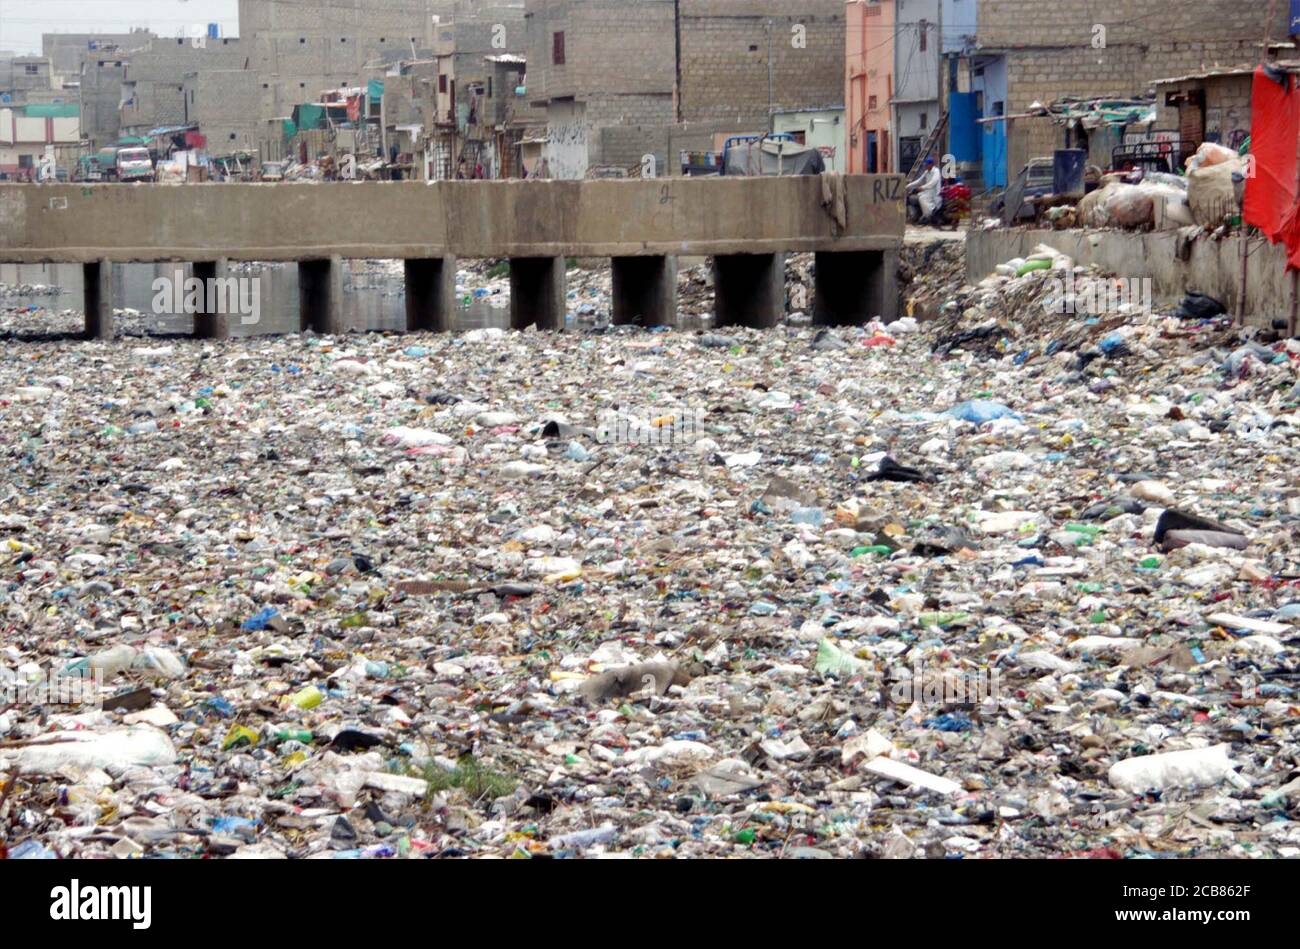 Ein Blick auf den offenen Abfluss, der sich mit Polyethylen-Säcken, Büschen und Müll füllt, wodurch eine unhygienische Atmosphäre entsteht, was Nachlässigkeit der betroffenen Behörden zeigt, die sich am Dienstag, 11. August 2020 im Gebiet von Mehmoodabad in Karachi befinden. Stockfoto